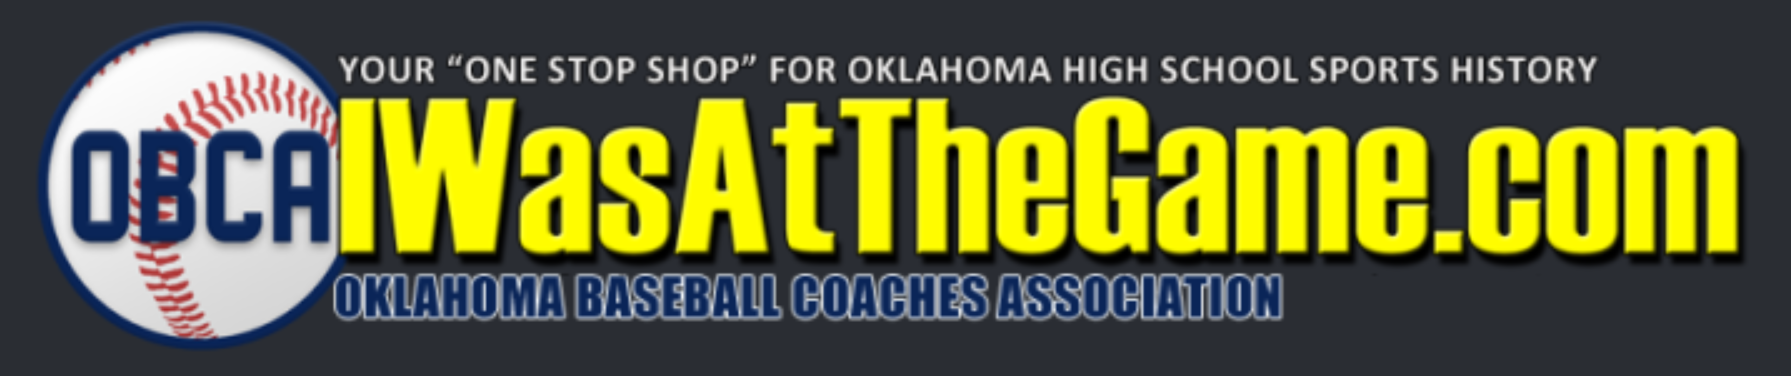 OBCA  Oklahoma Basketball Coaches Association